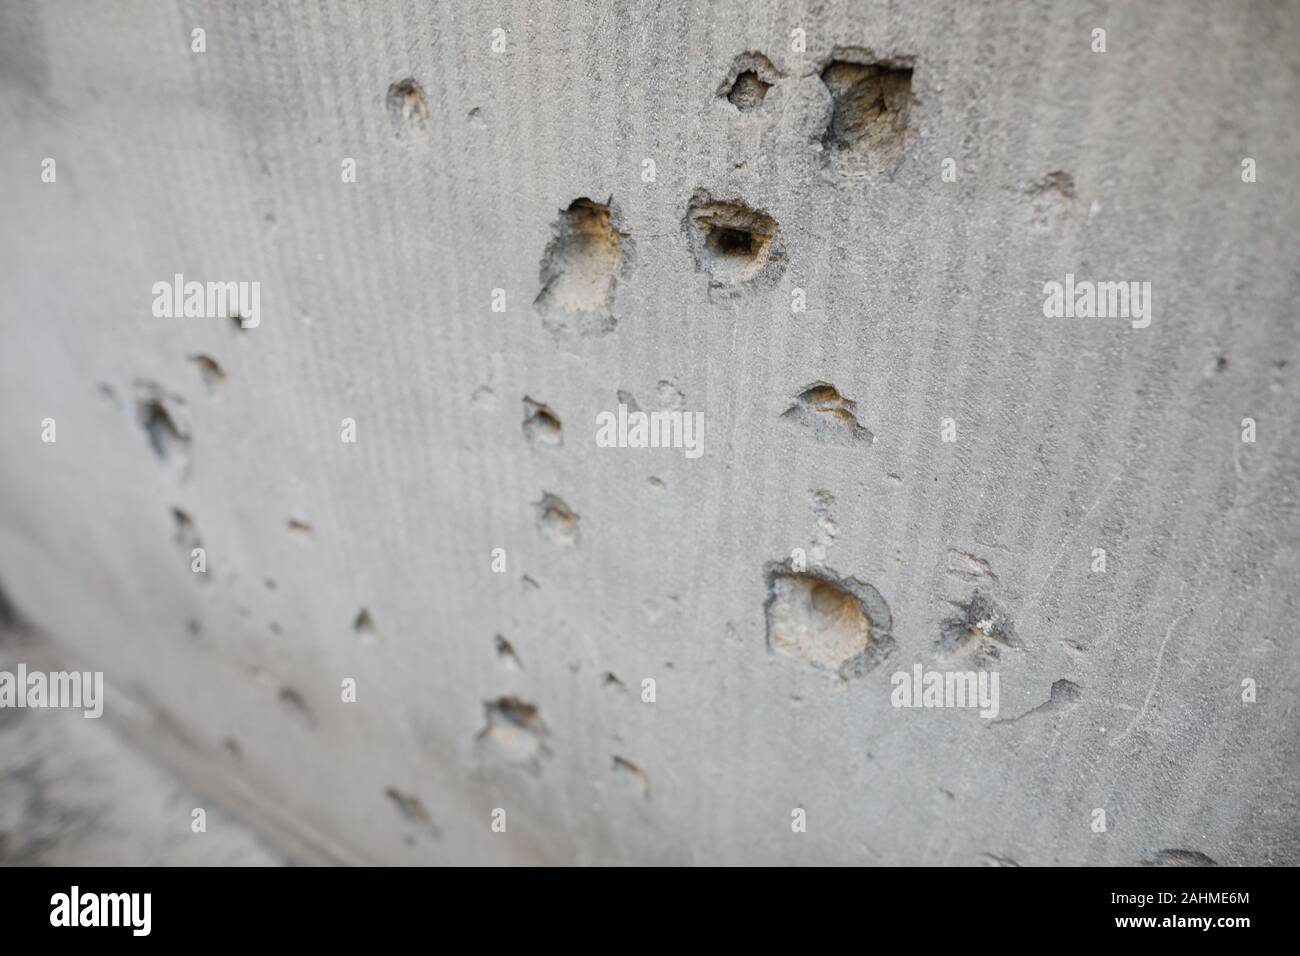 Detalles con orificios de bala en la pared desde el rumano contra la revolución comunista de 1989. Foto de stock